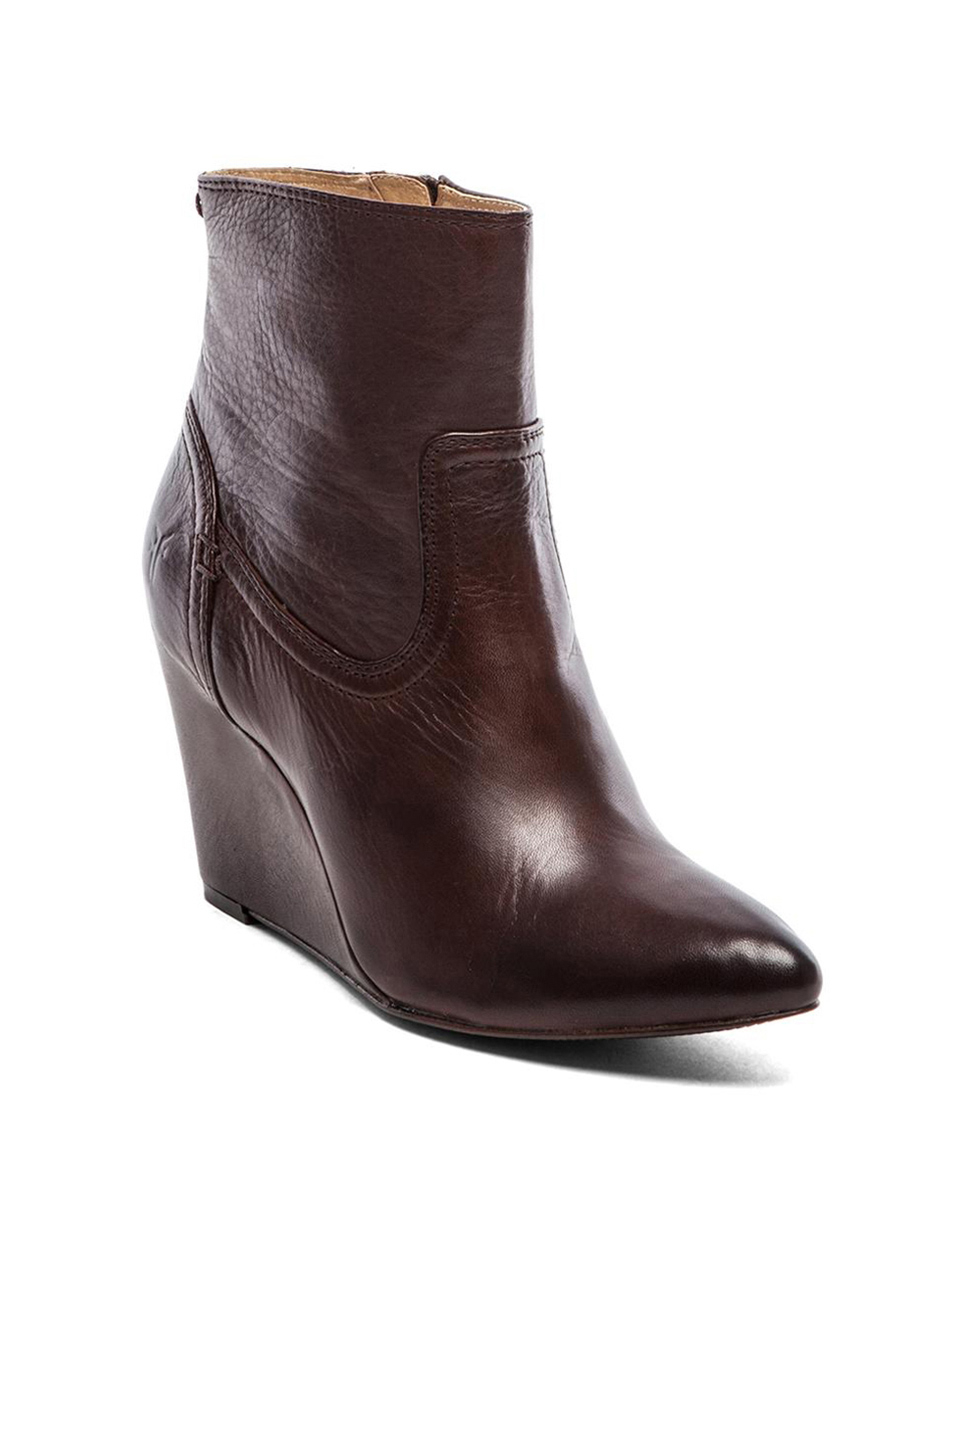 Frye Regina Wedge Short Boot in Dark Brown (Brown) - Lyst